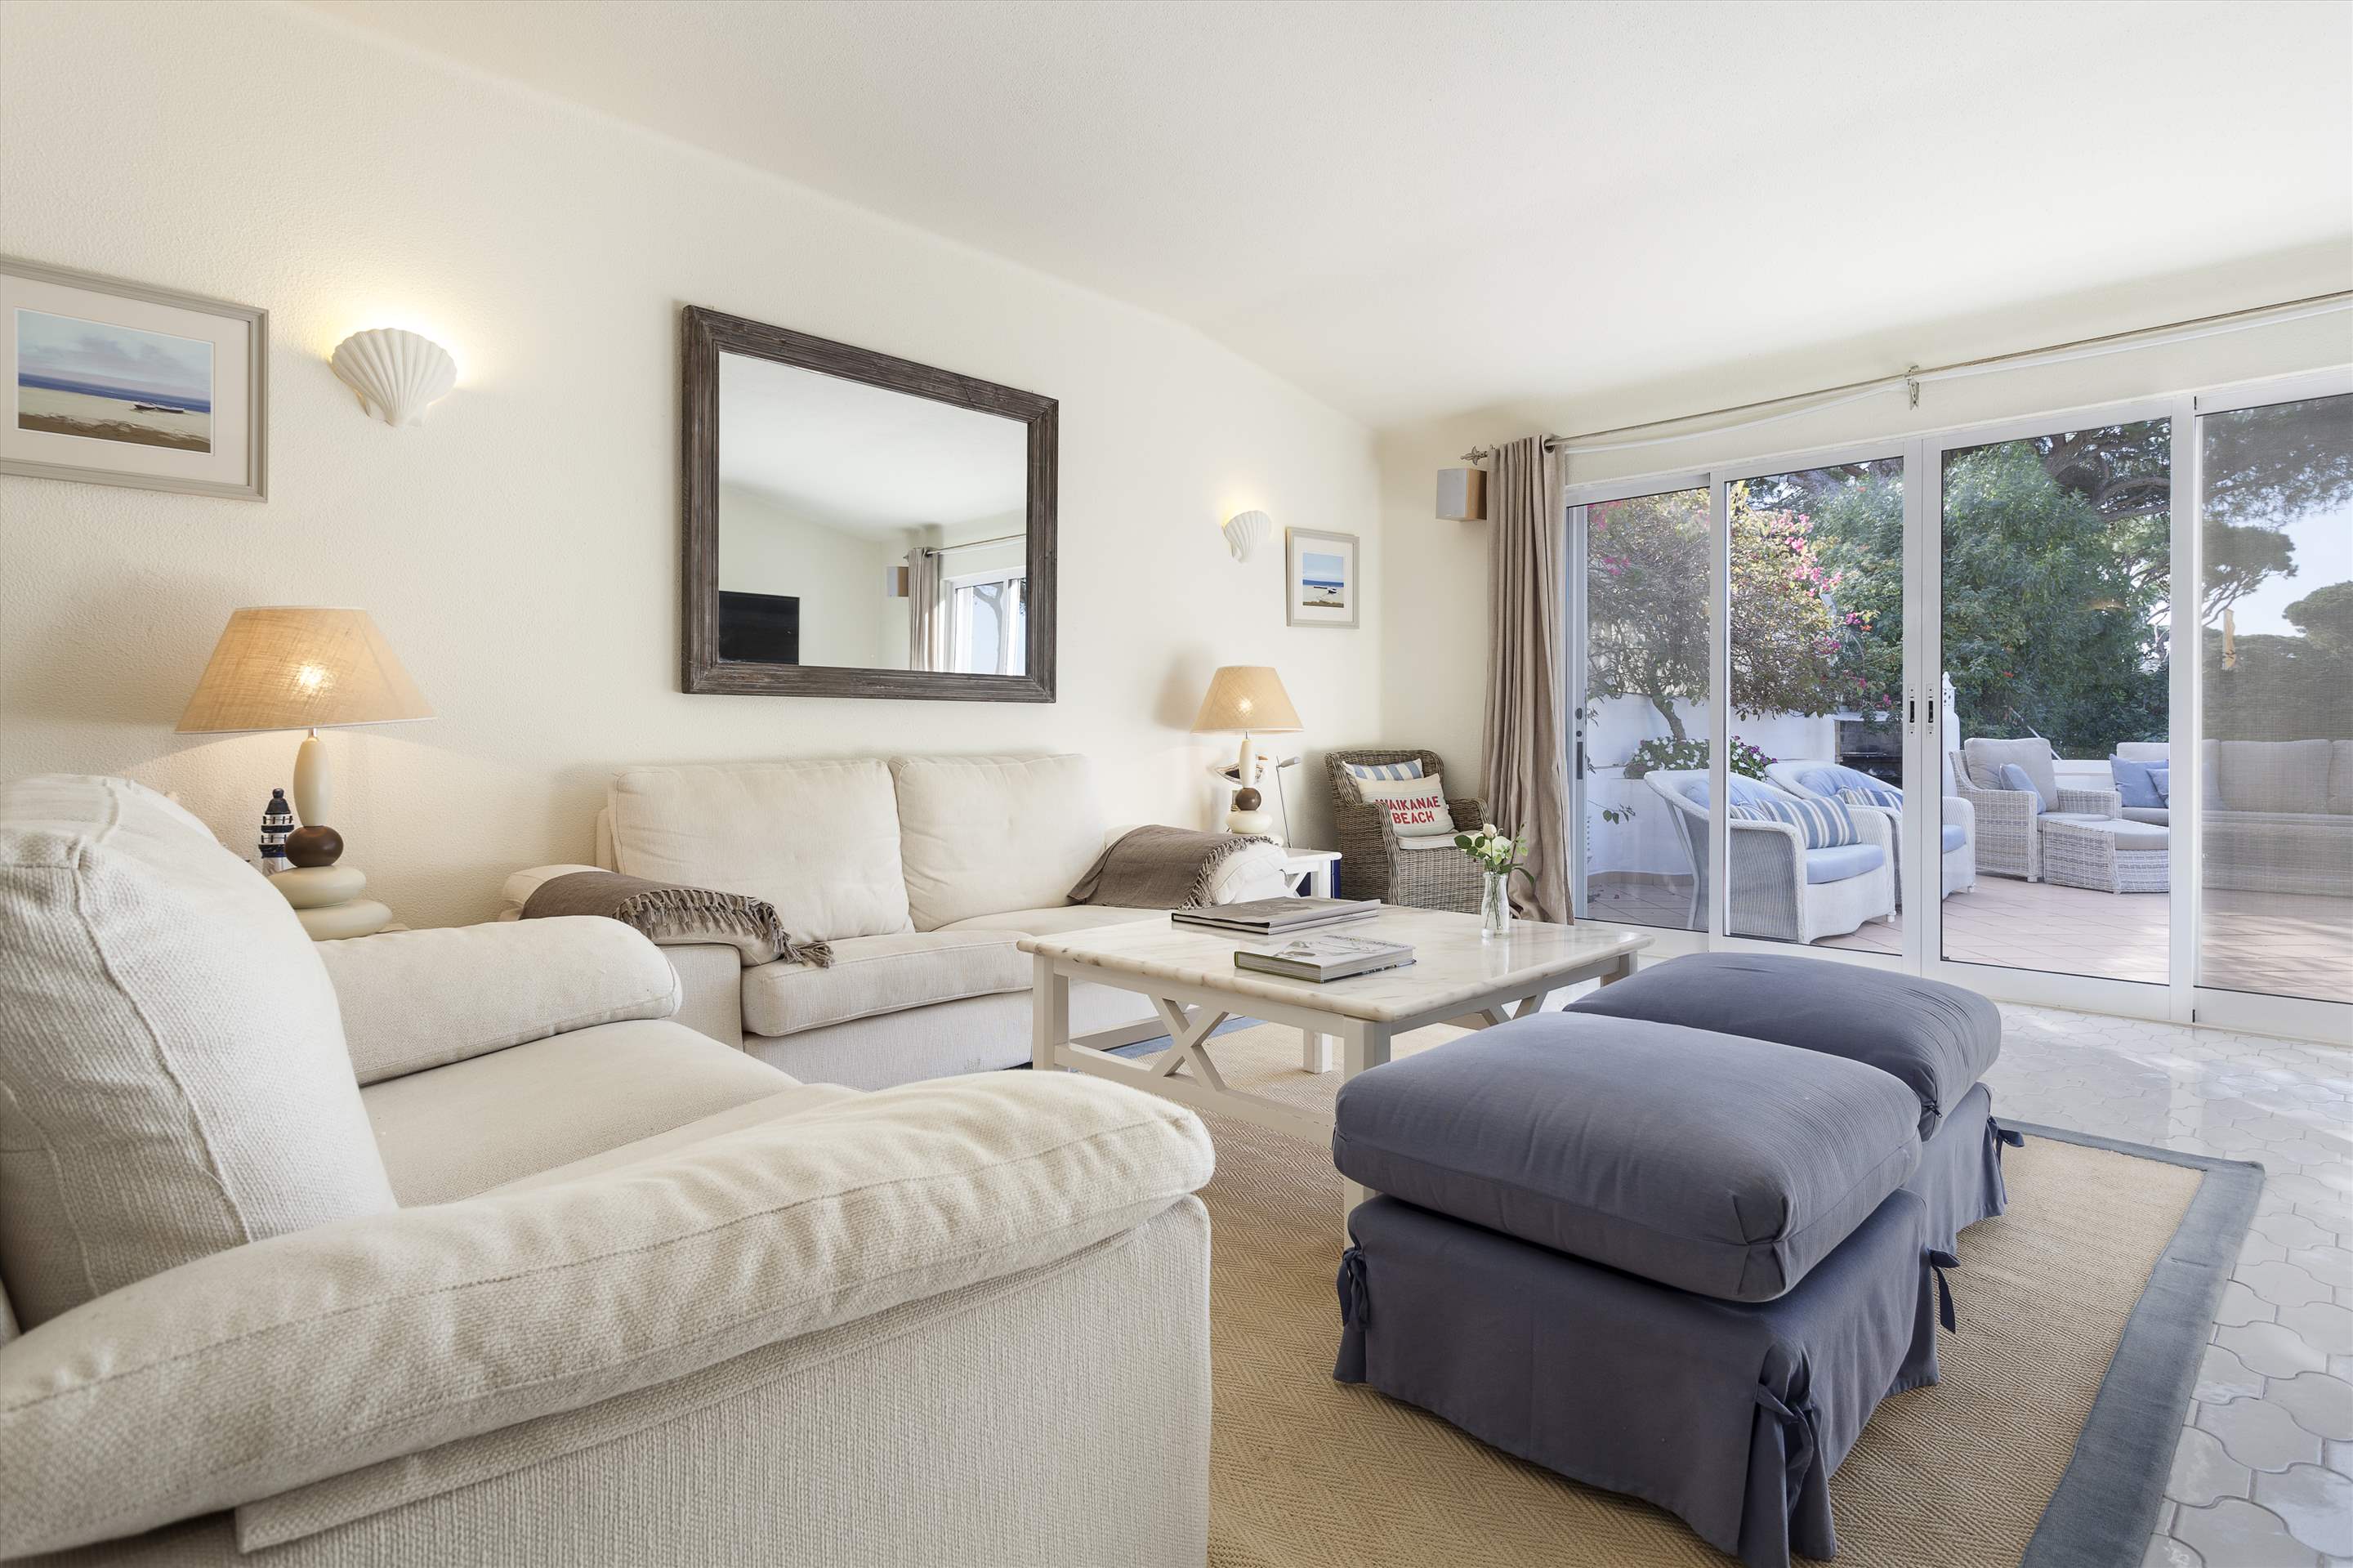 Villa Cascata, 4 Bedroom, 4 bedroom villa in Vale do Lobo, Algarve Photo #4